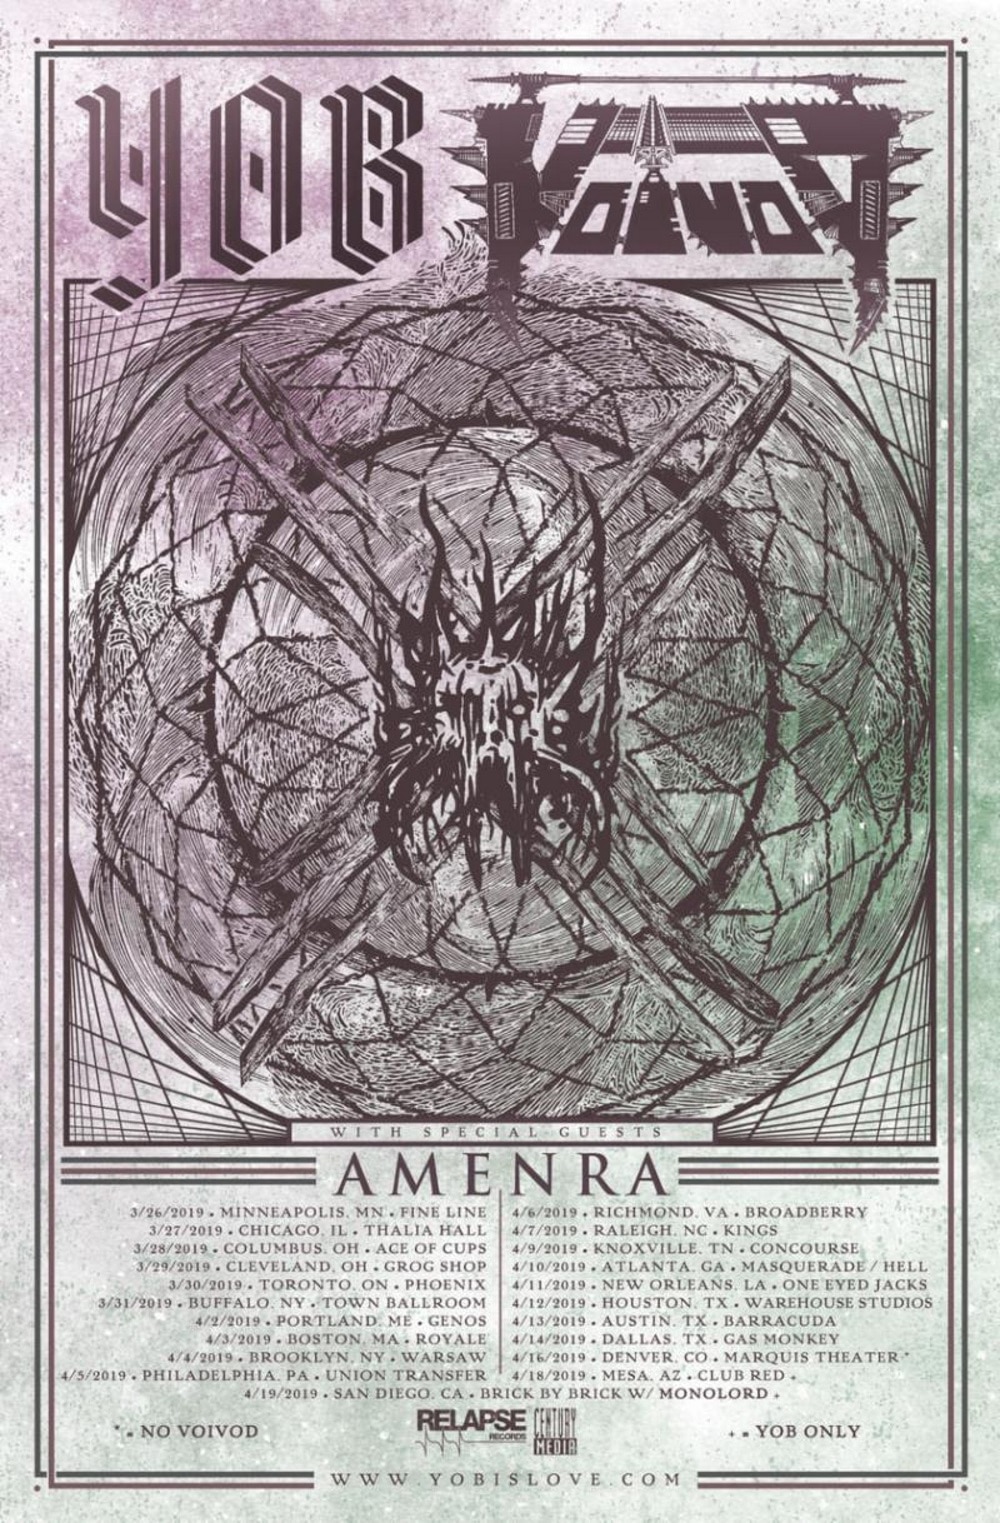 AMENRA tour